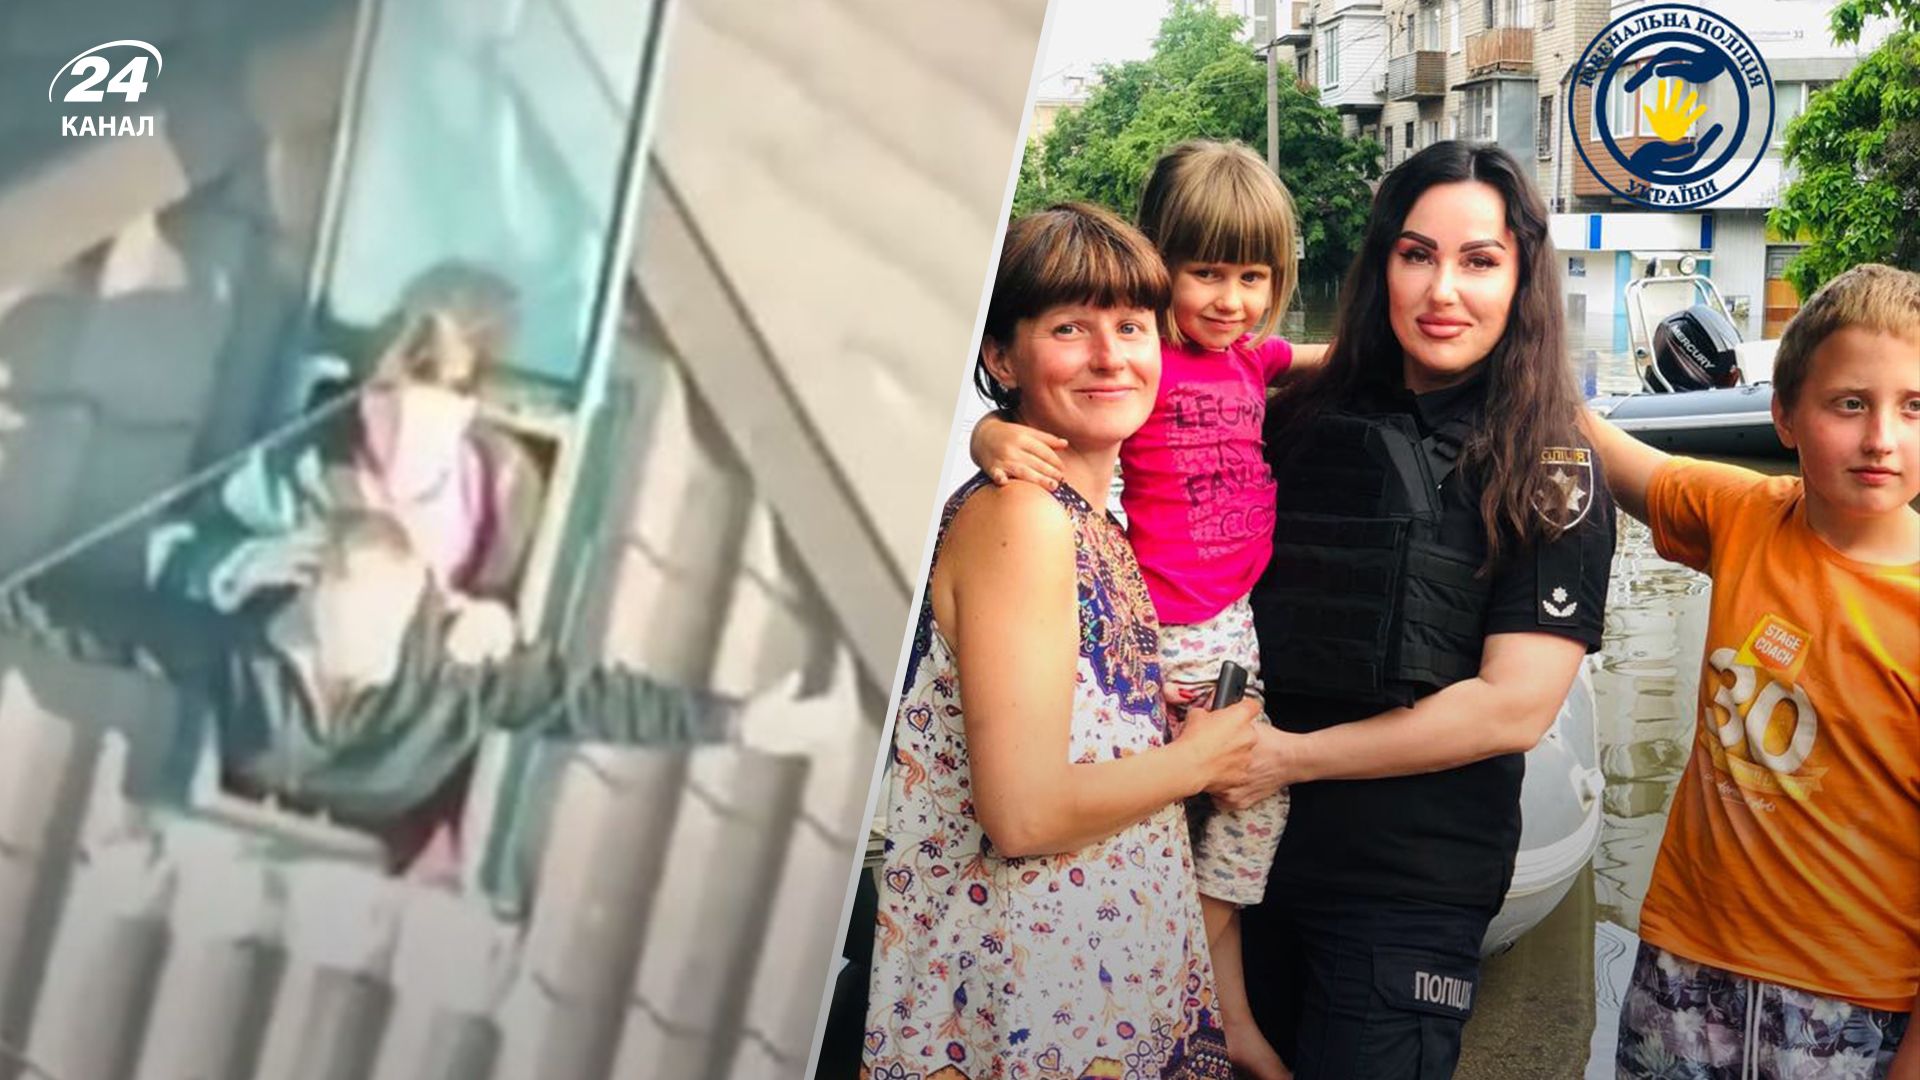 Женщина с детьми, которых спасли с крыши в Алешках, уже в безопасном месте: эмоциональные фото - 24 Канал